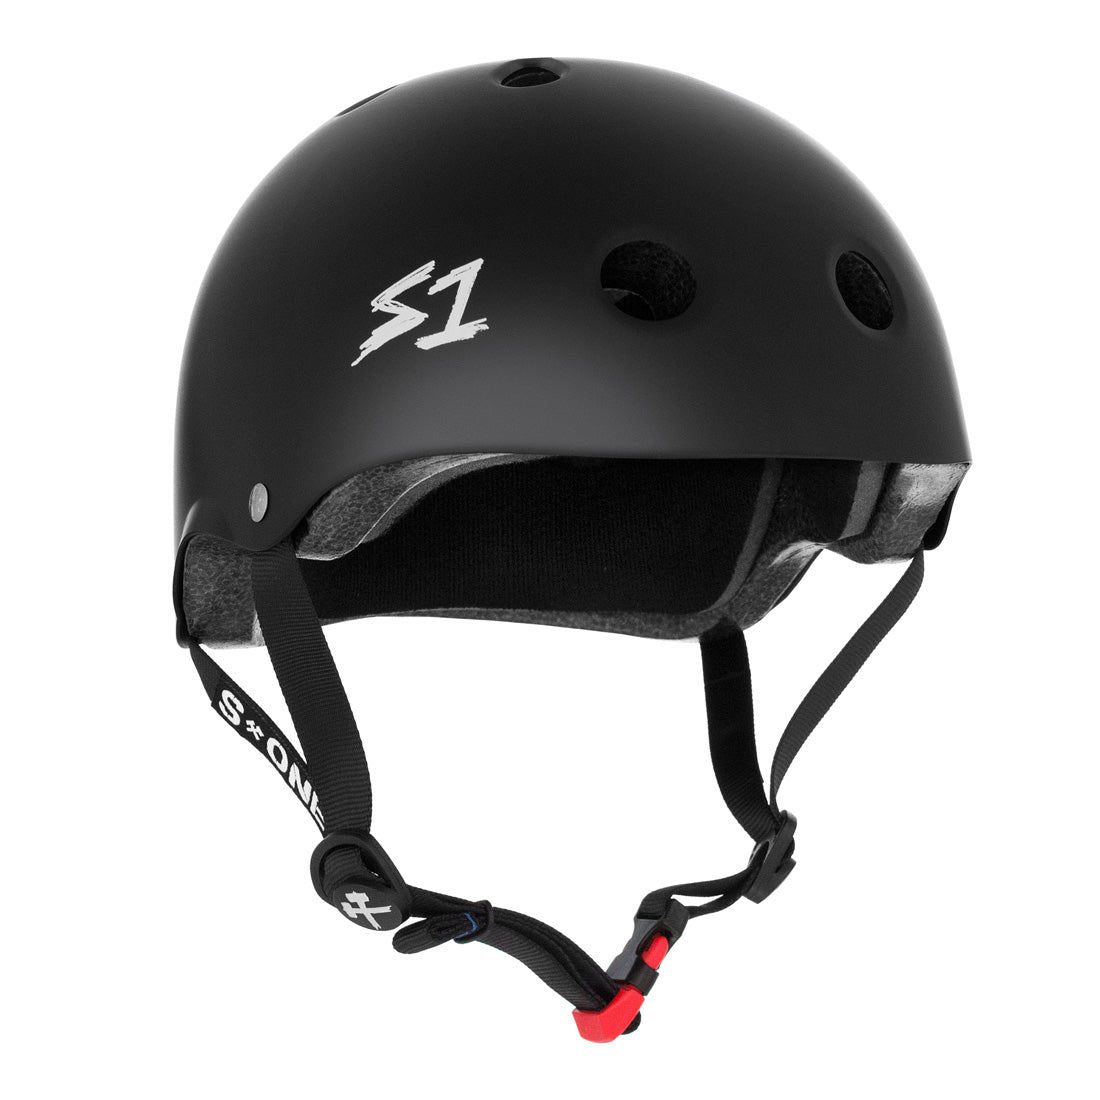 S-One Mini Lifer Helmet - Black Matte Helmets